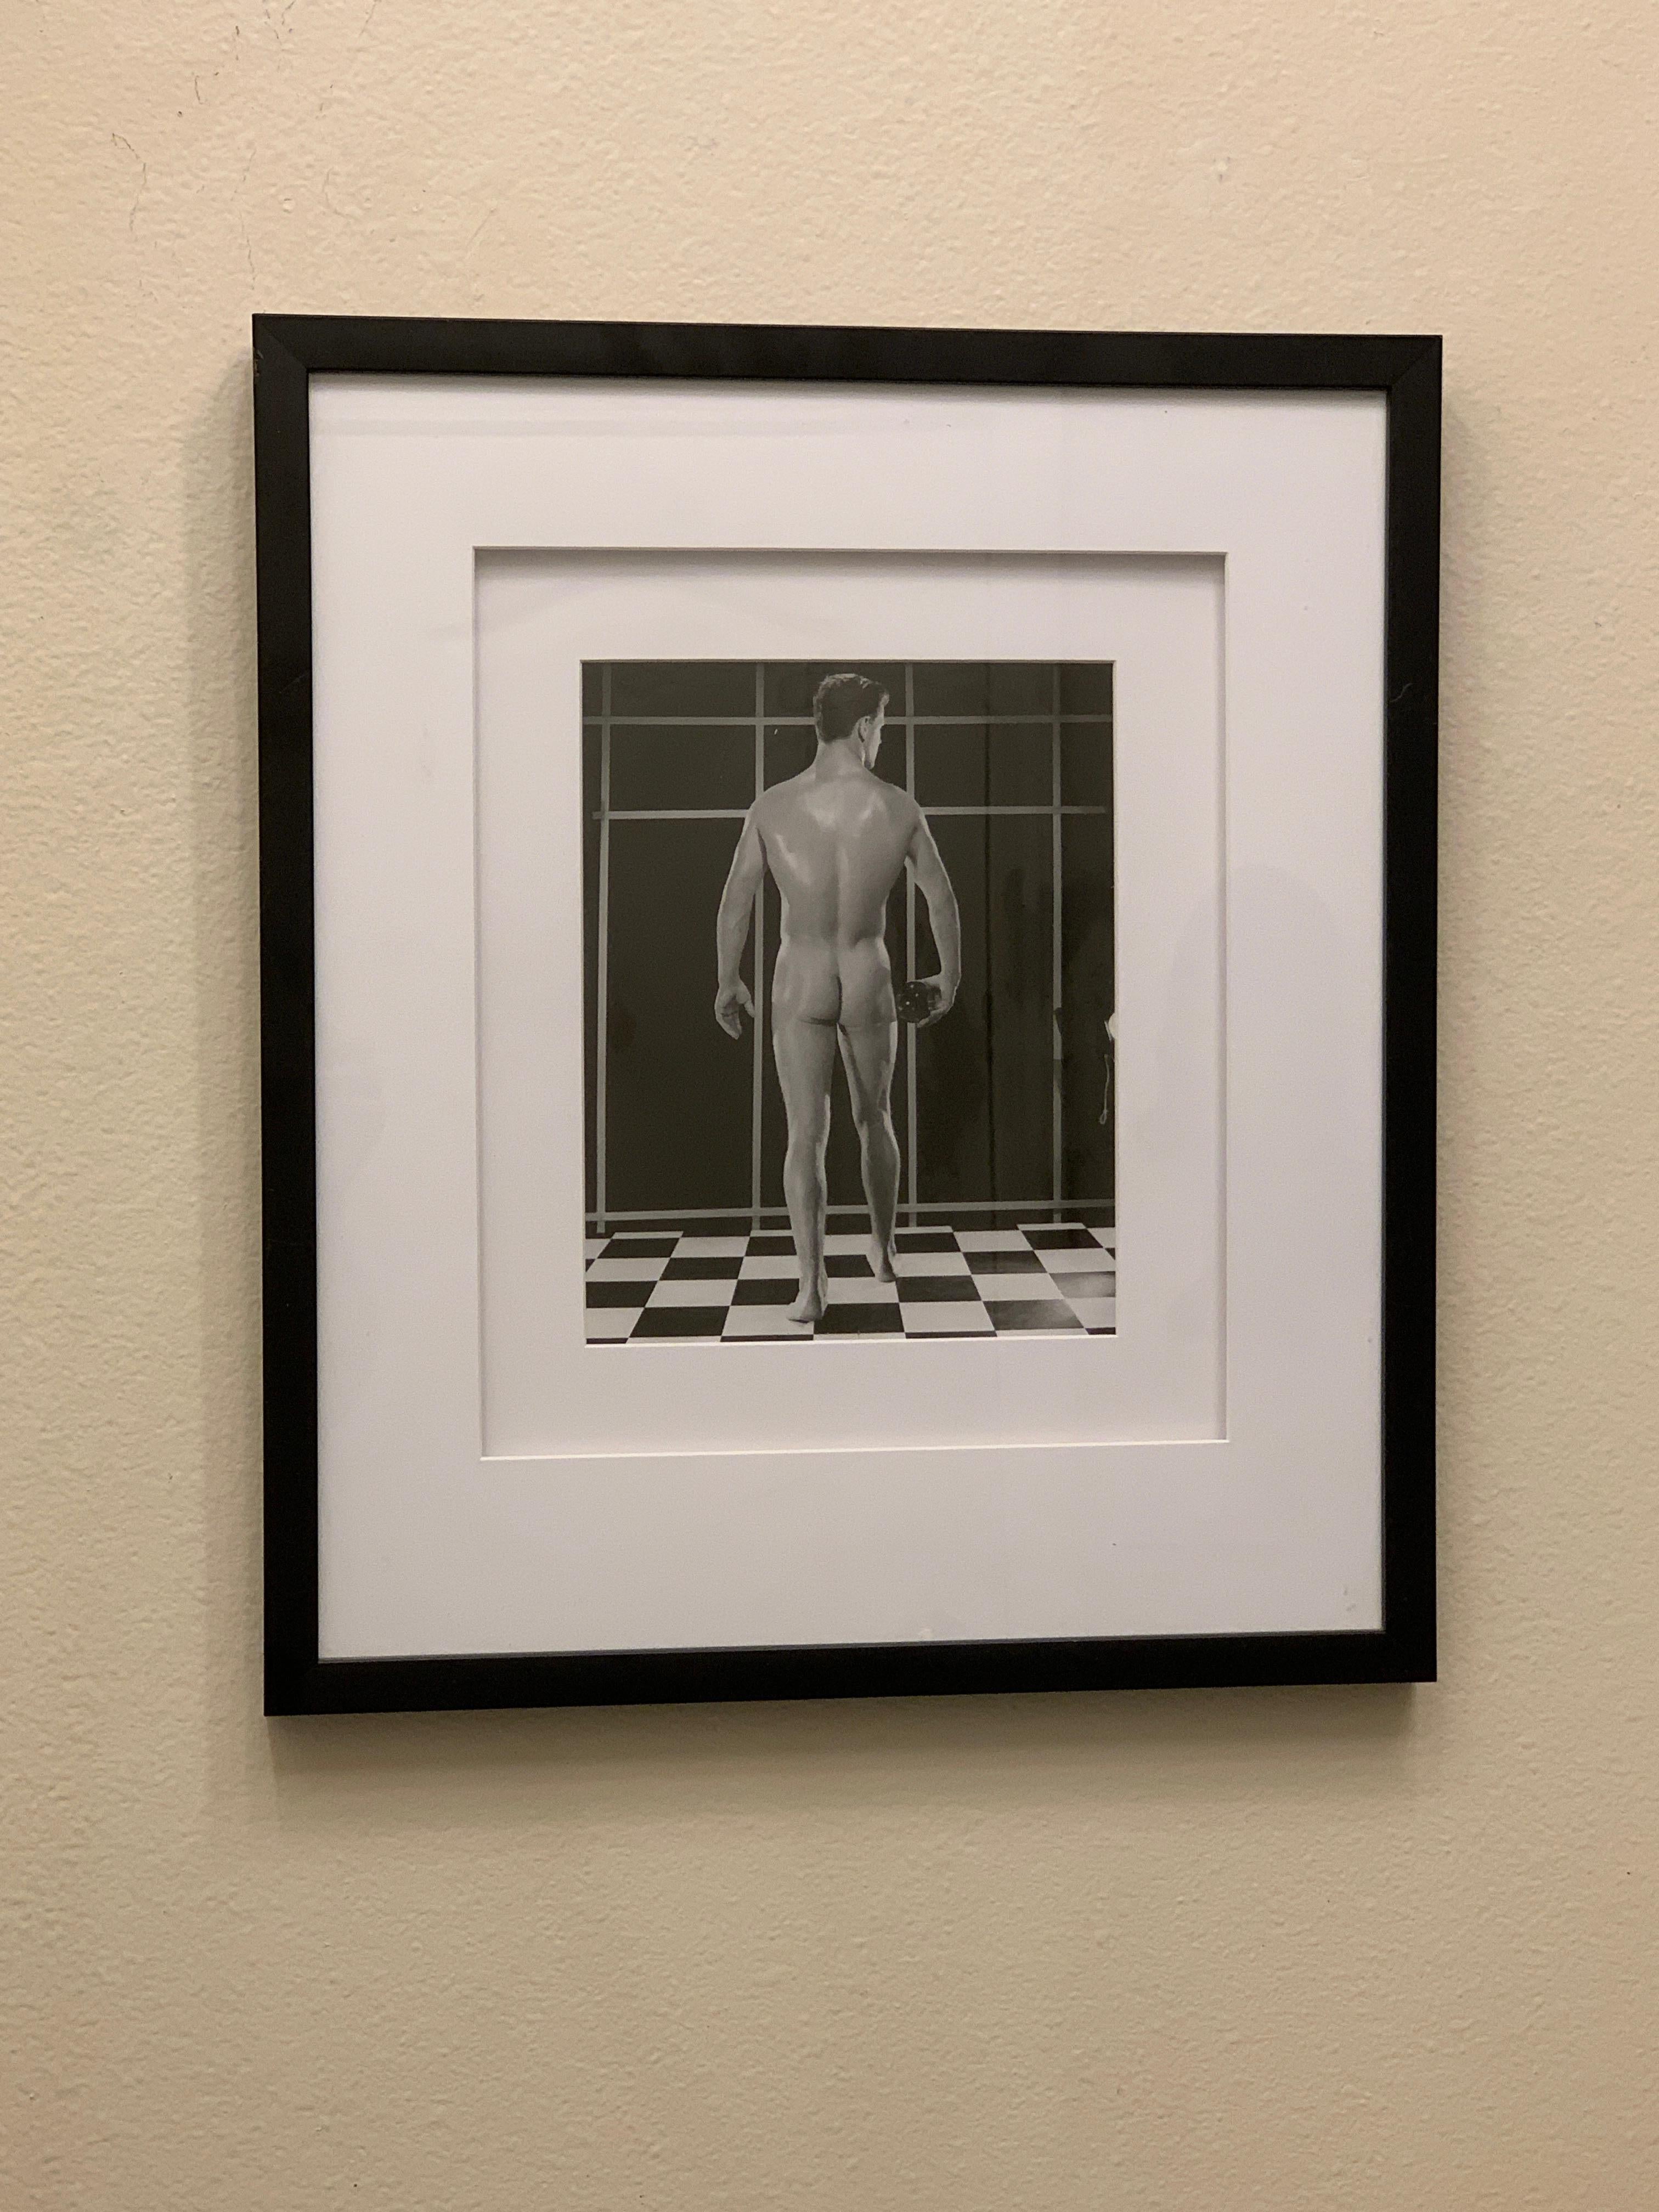 Issue d'une importante collection de plus de 25 ans de photographies de physique masculin et de Beefcake, une image emblématique réalisée par Bruce en studio avec un modèle posant sur le sol noir et blanc emblématique, montrant son dos masculin.